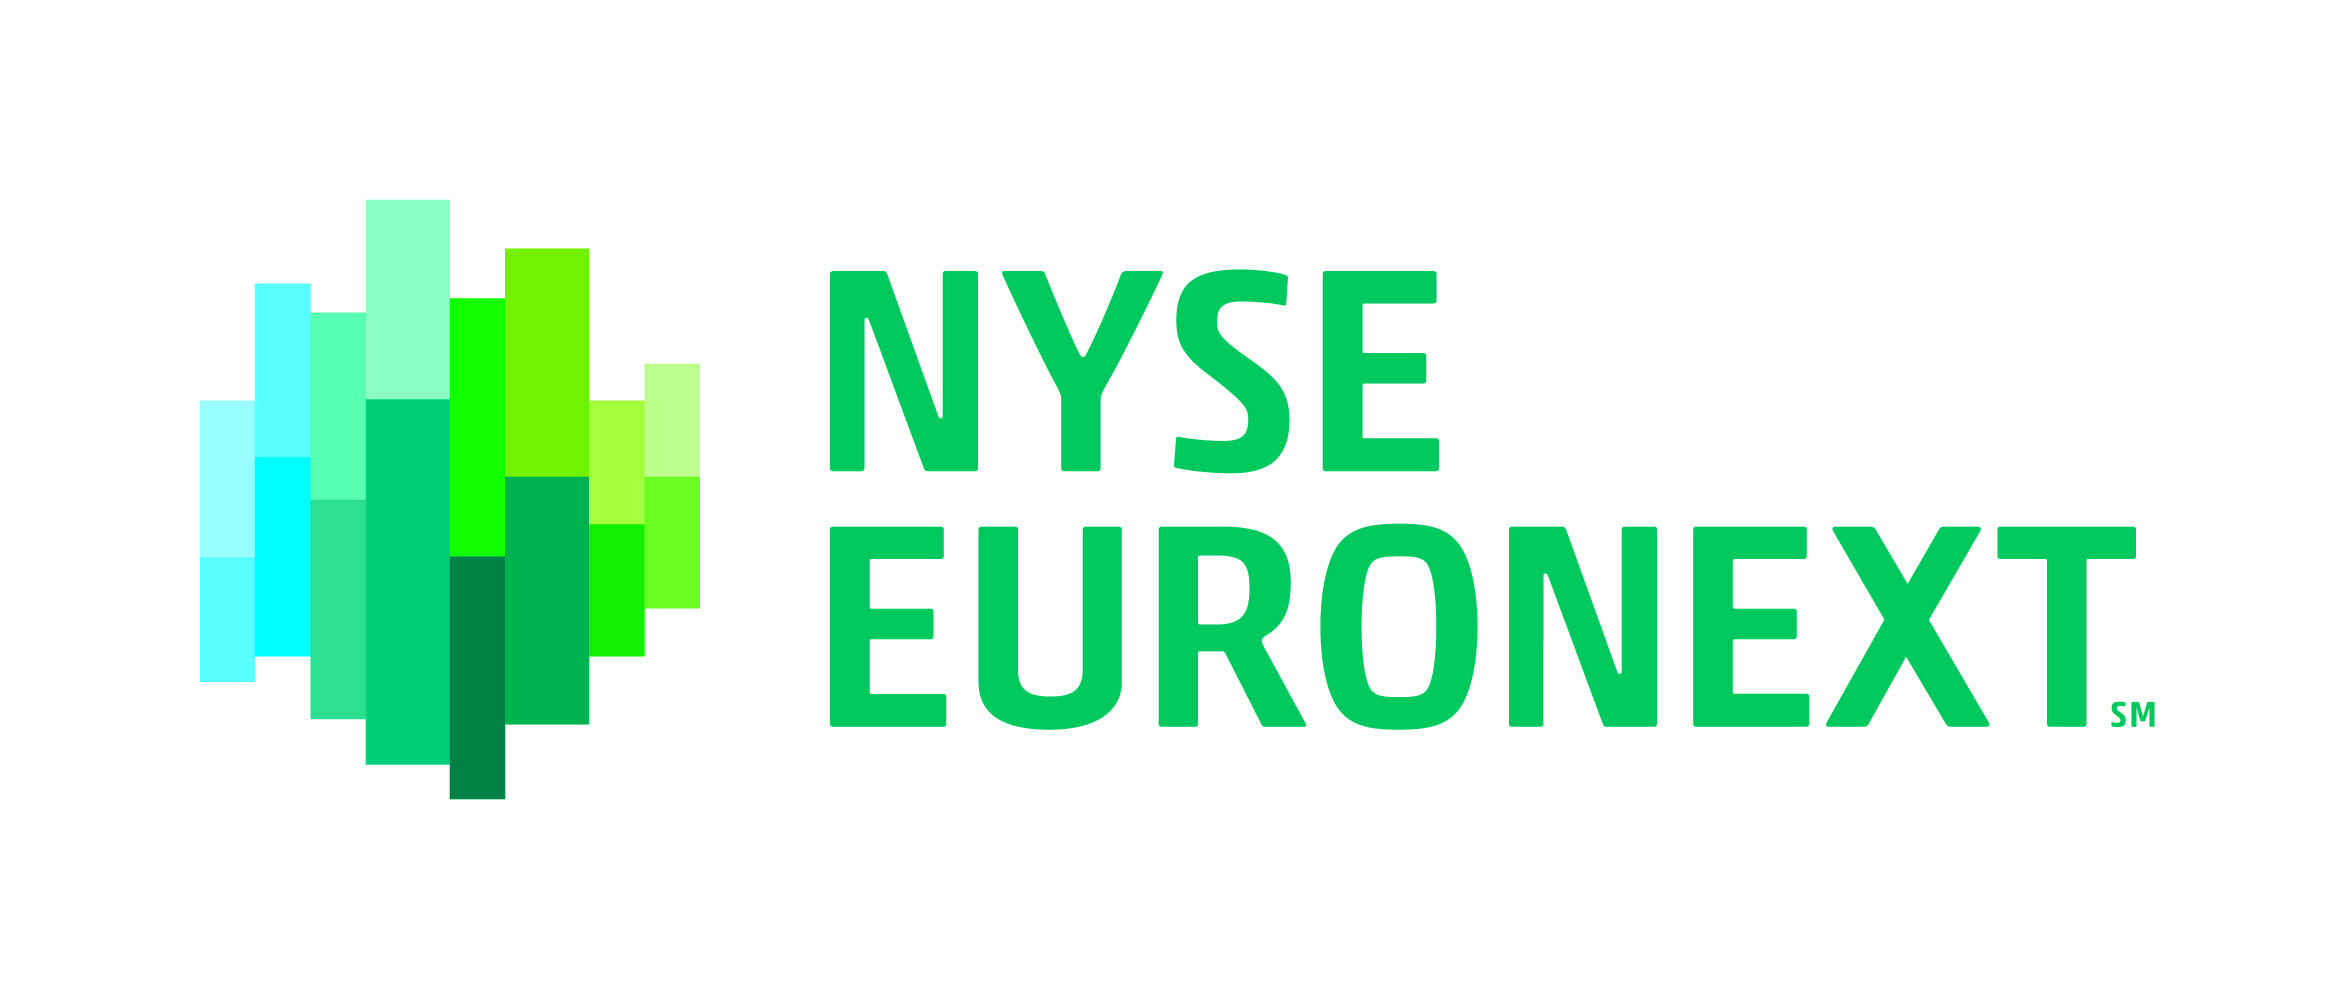 Биржа euronext отказалась от покупки нью-йоркской фондовой биржи — викиновости